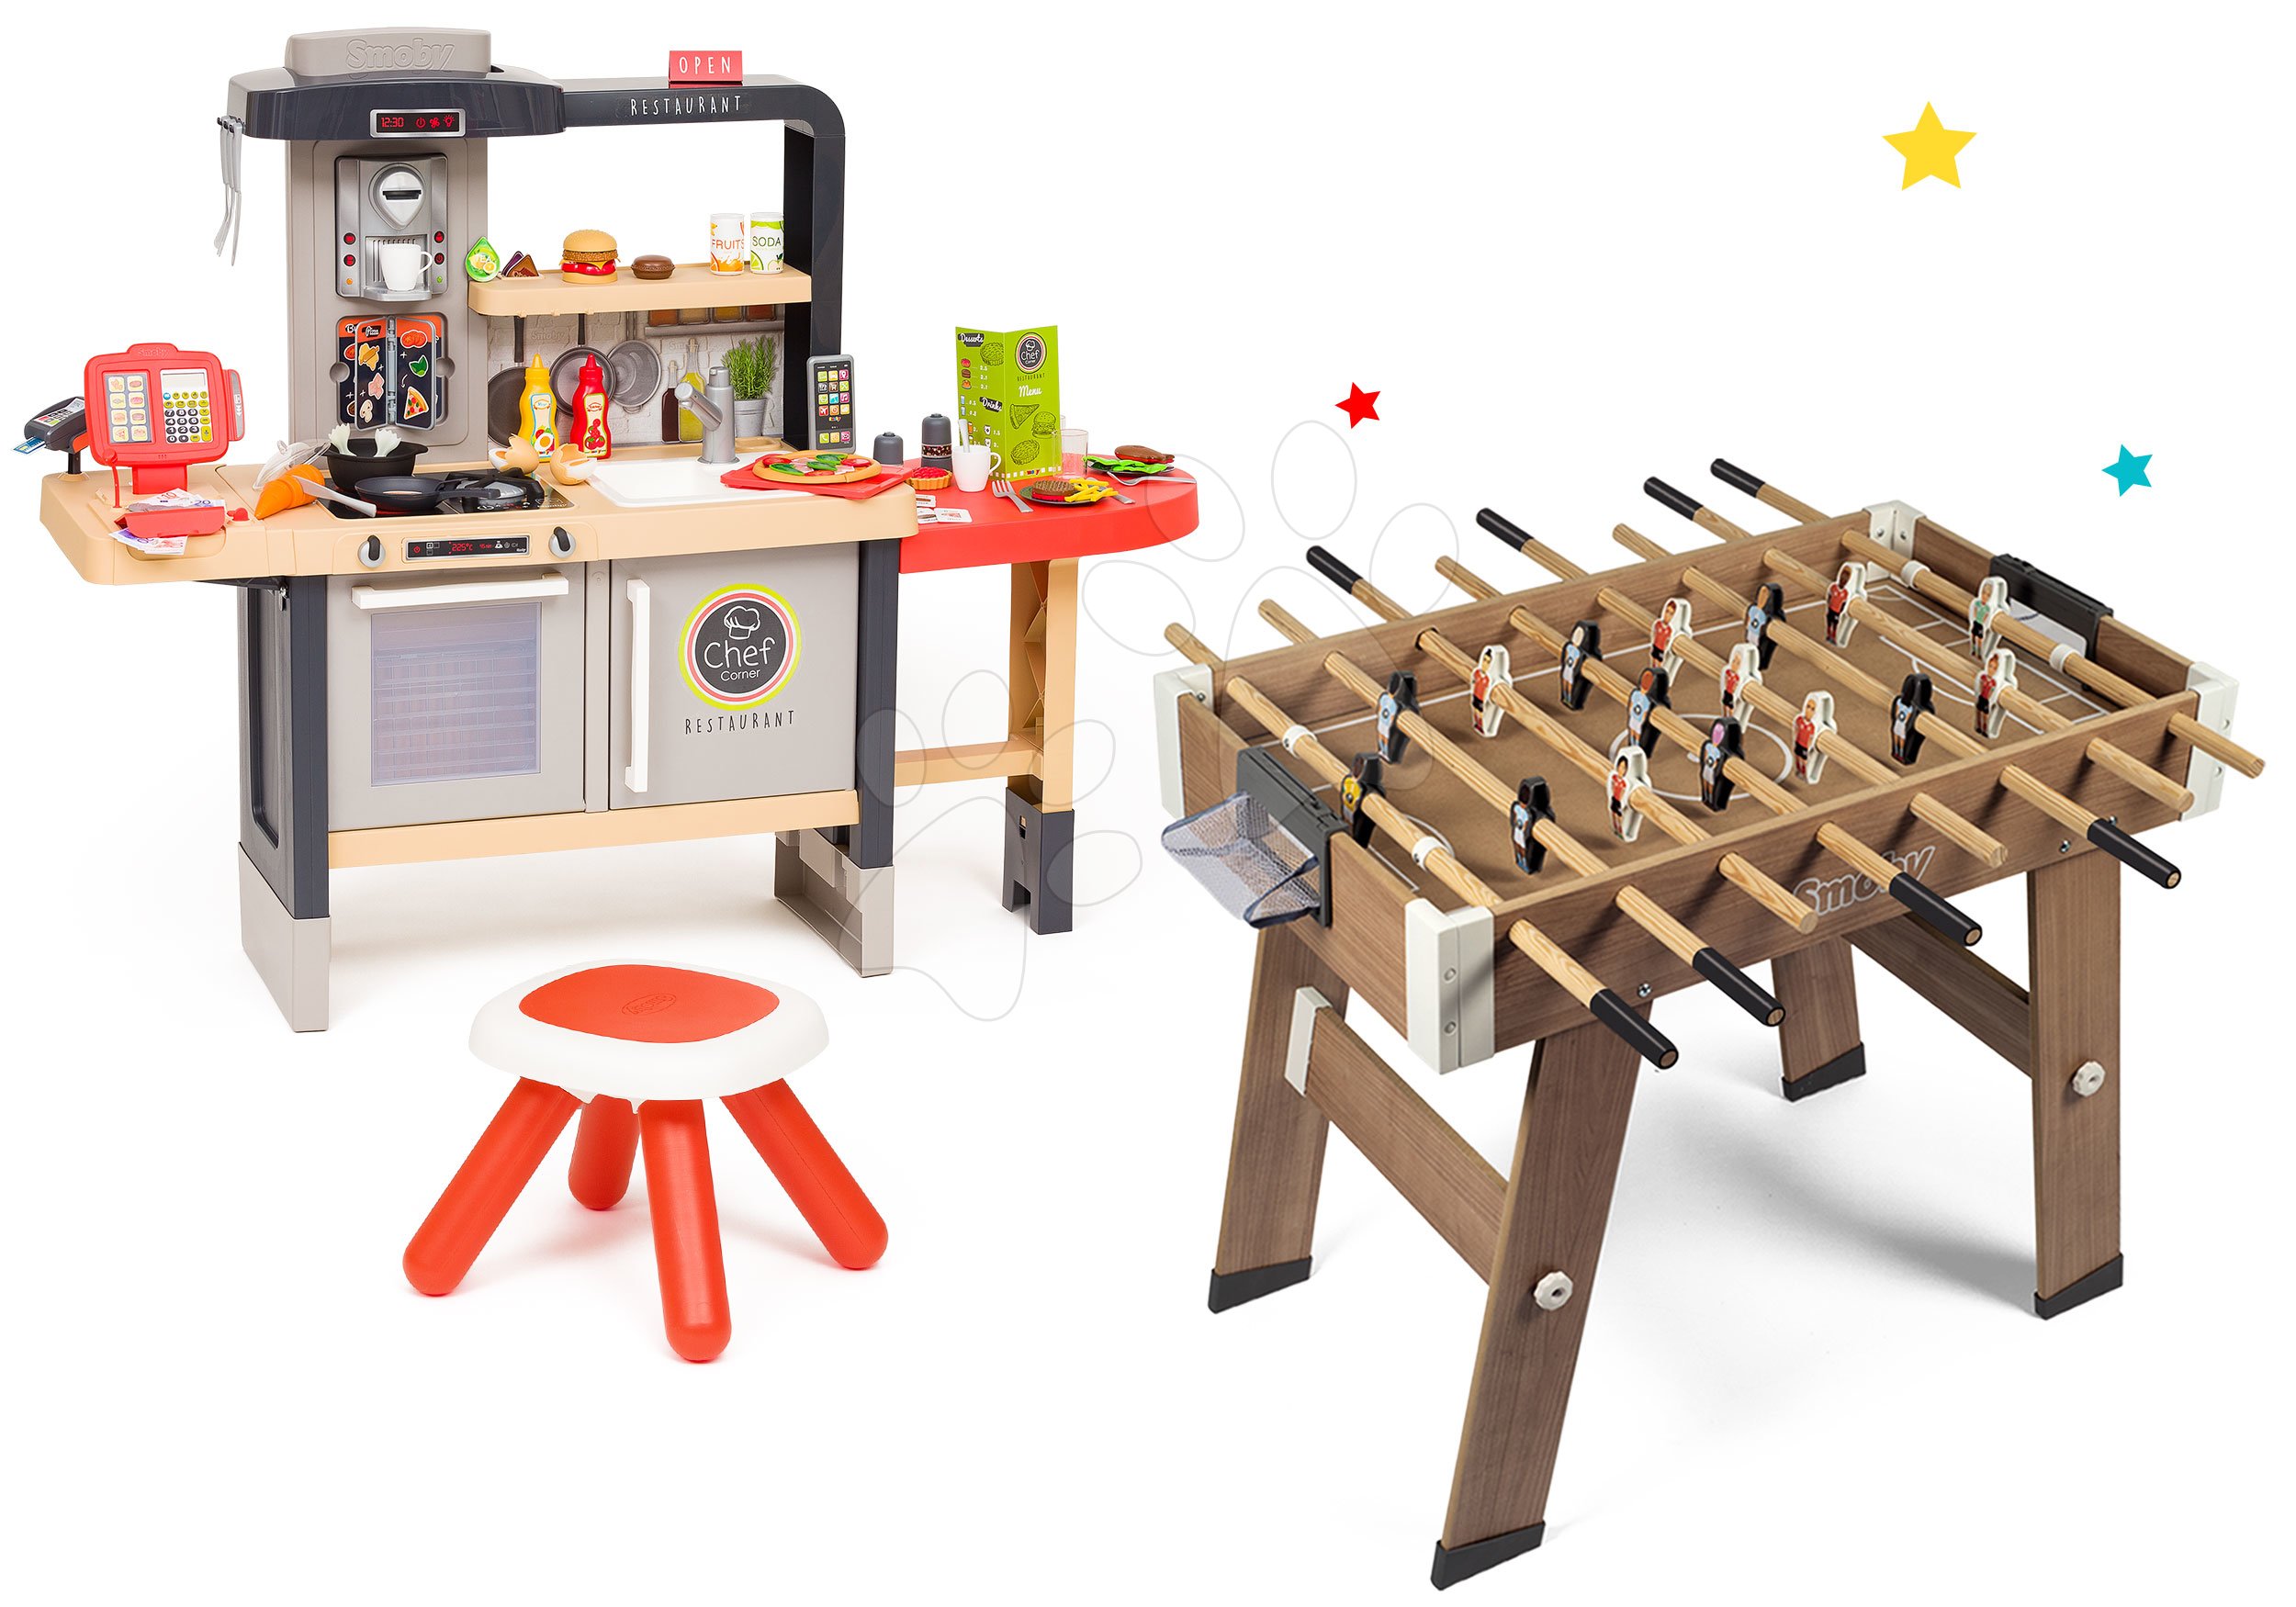 Kuchynky pre deti sety - Set reštaurácia s elektronickou kuchynkou Chef Corner Restaurant Smoby s dreveným futbalovým stolom